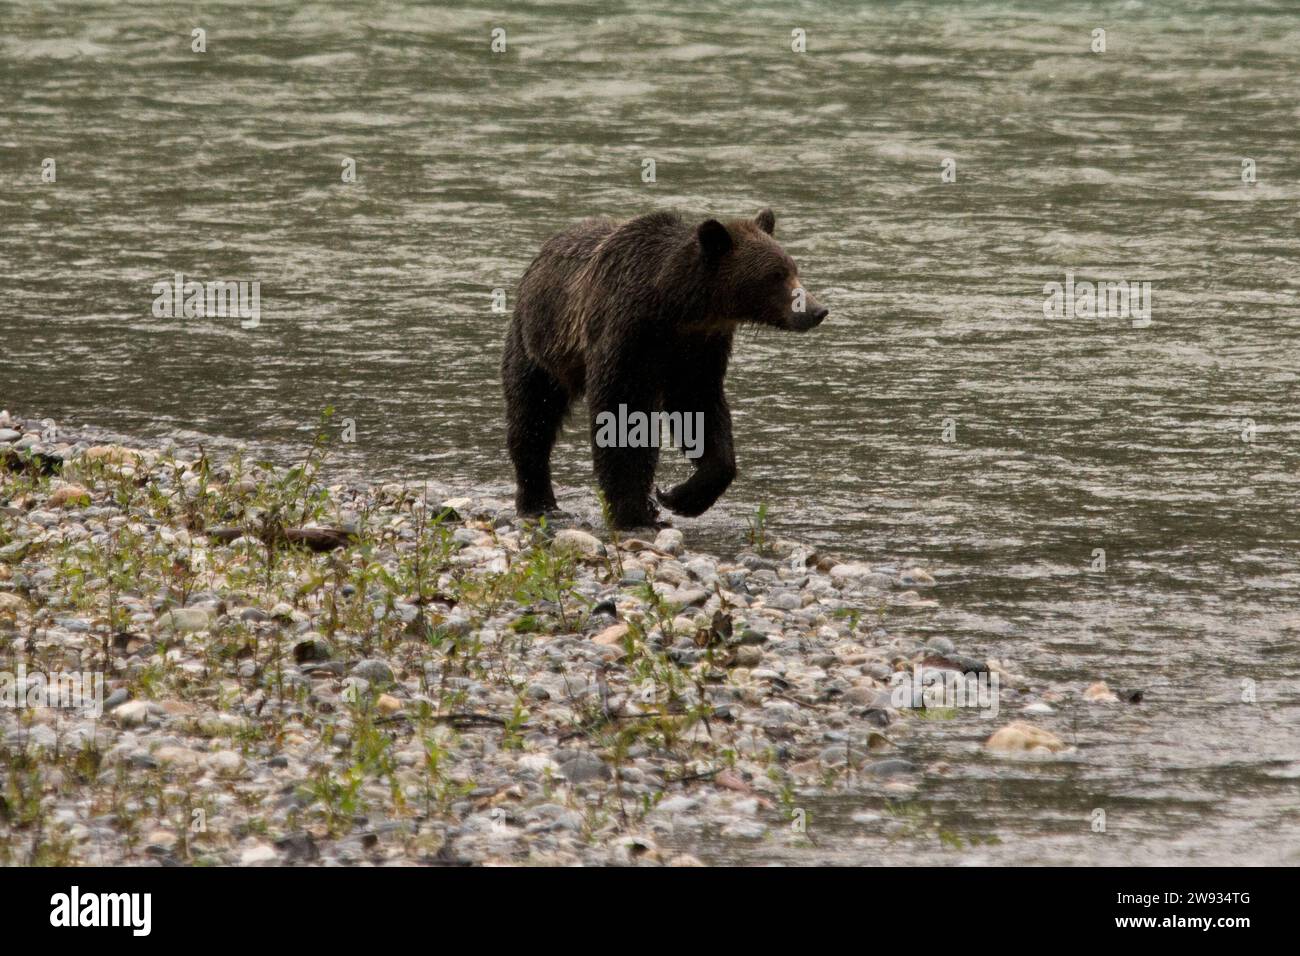 Oso Grizzly en las orillas del río Orford cerca de Bute Inlet en el distrito regional de Strathcona en la parte continental de Columbia Británica en Canadá. Foto de stock